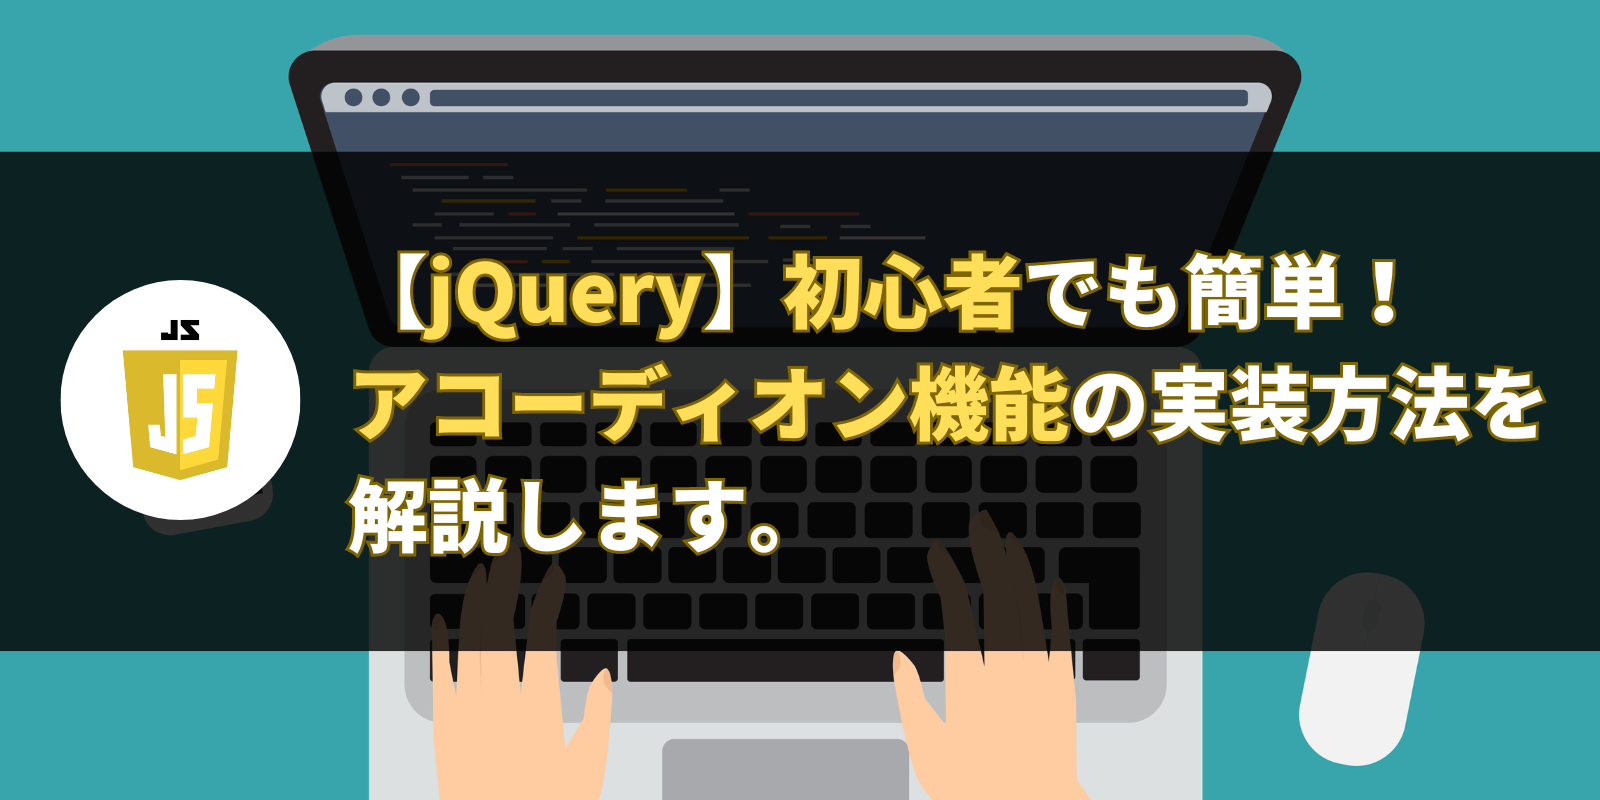 【jQuery】初心者でも簡単！ アコーディオン機能の実装方法を解説します。